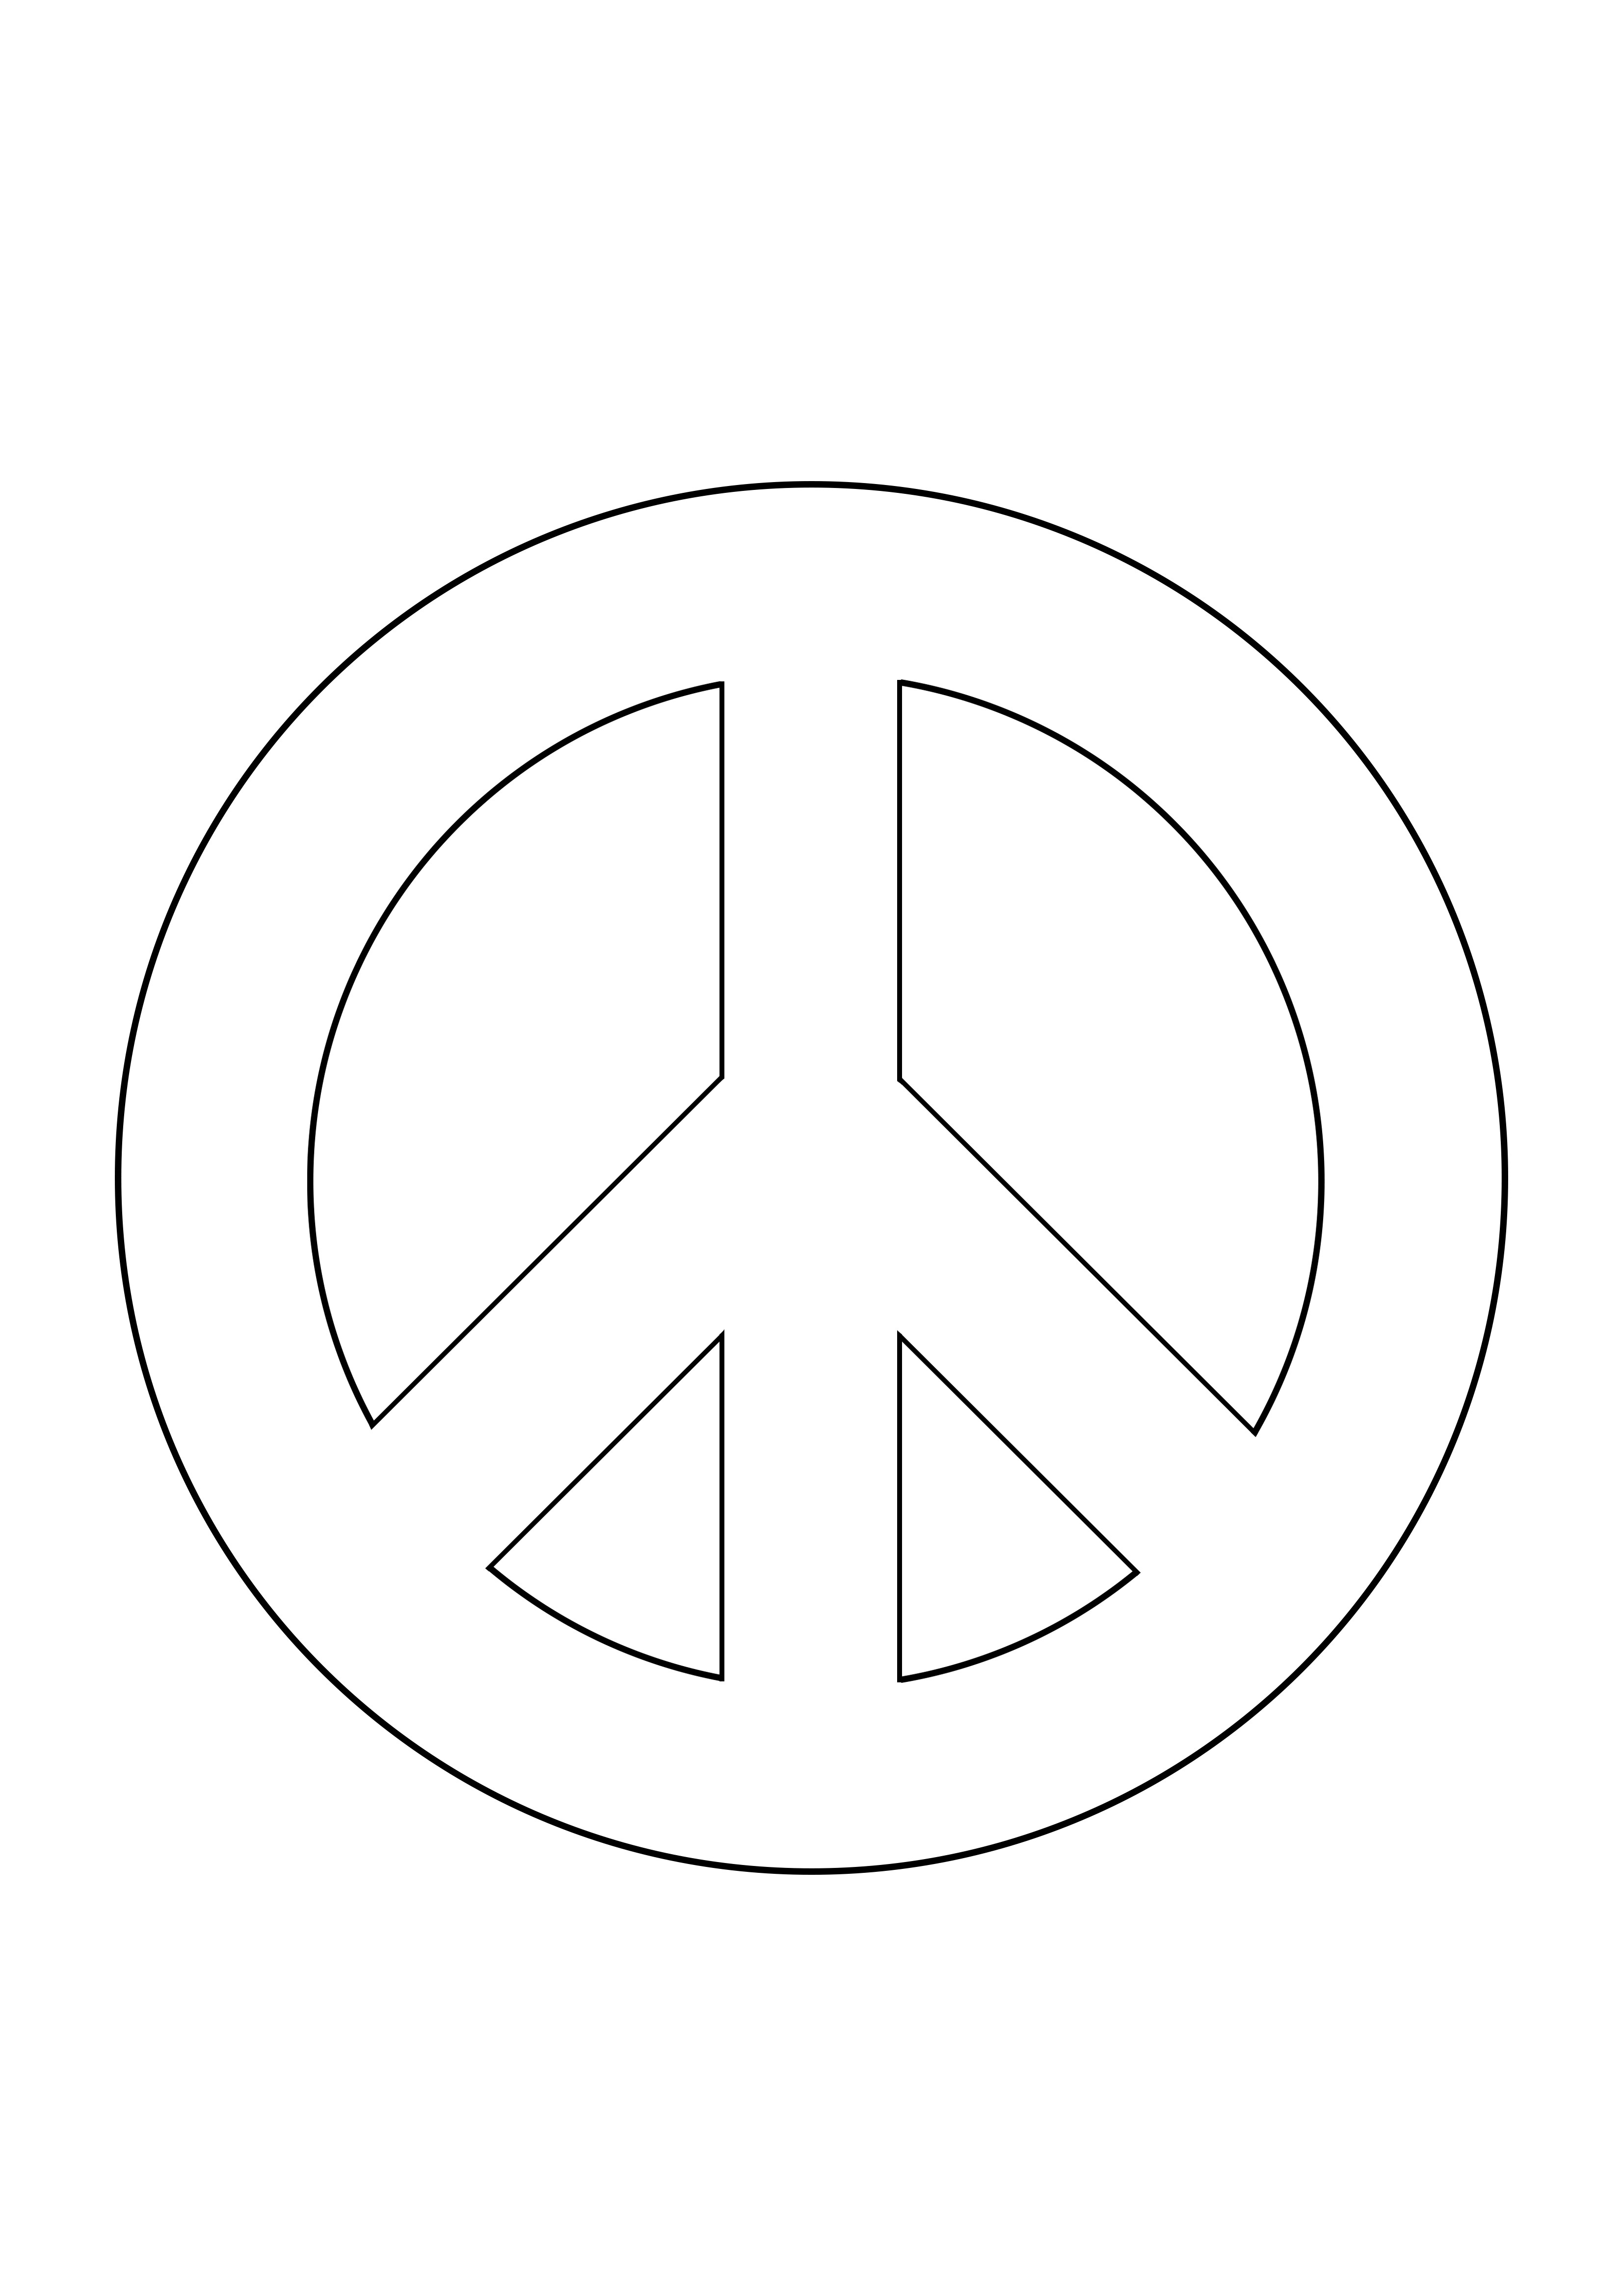 Kansainvälisen rauhanpäivän merkki väritys- ja tulostusarkki ilmaiseksi